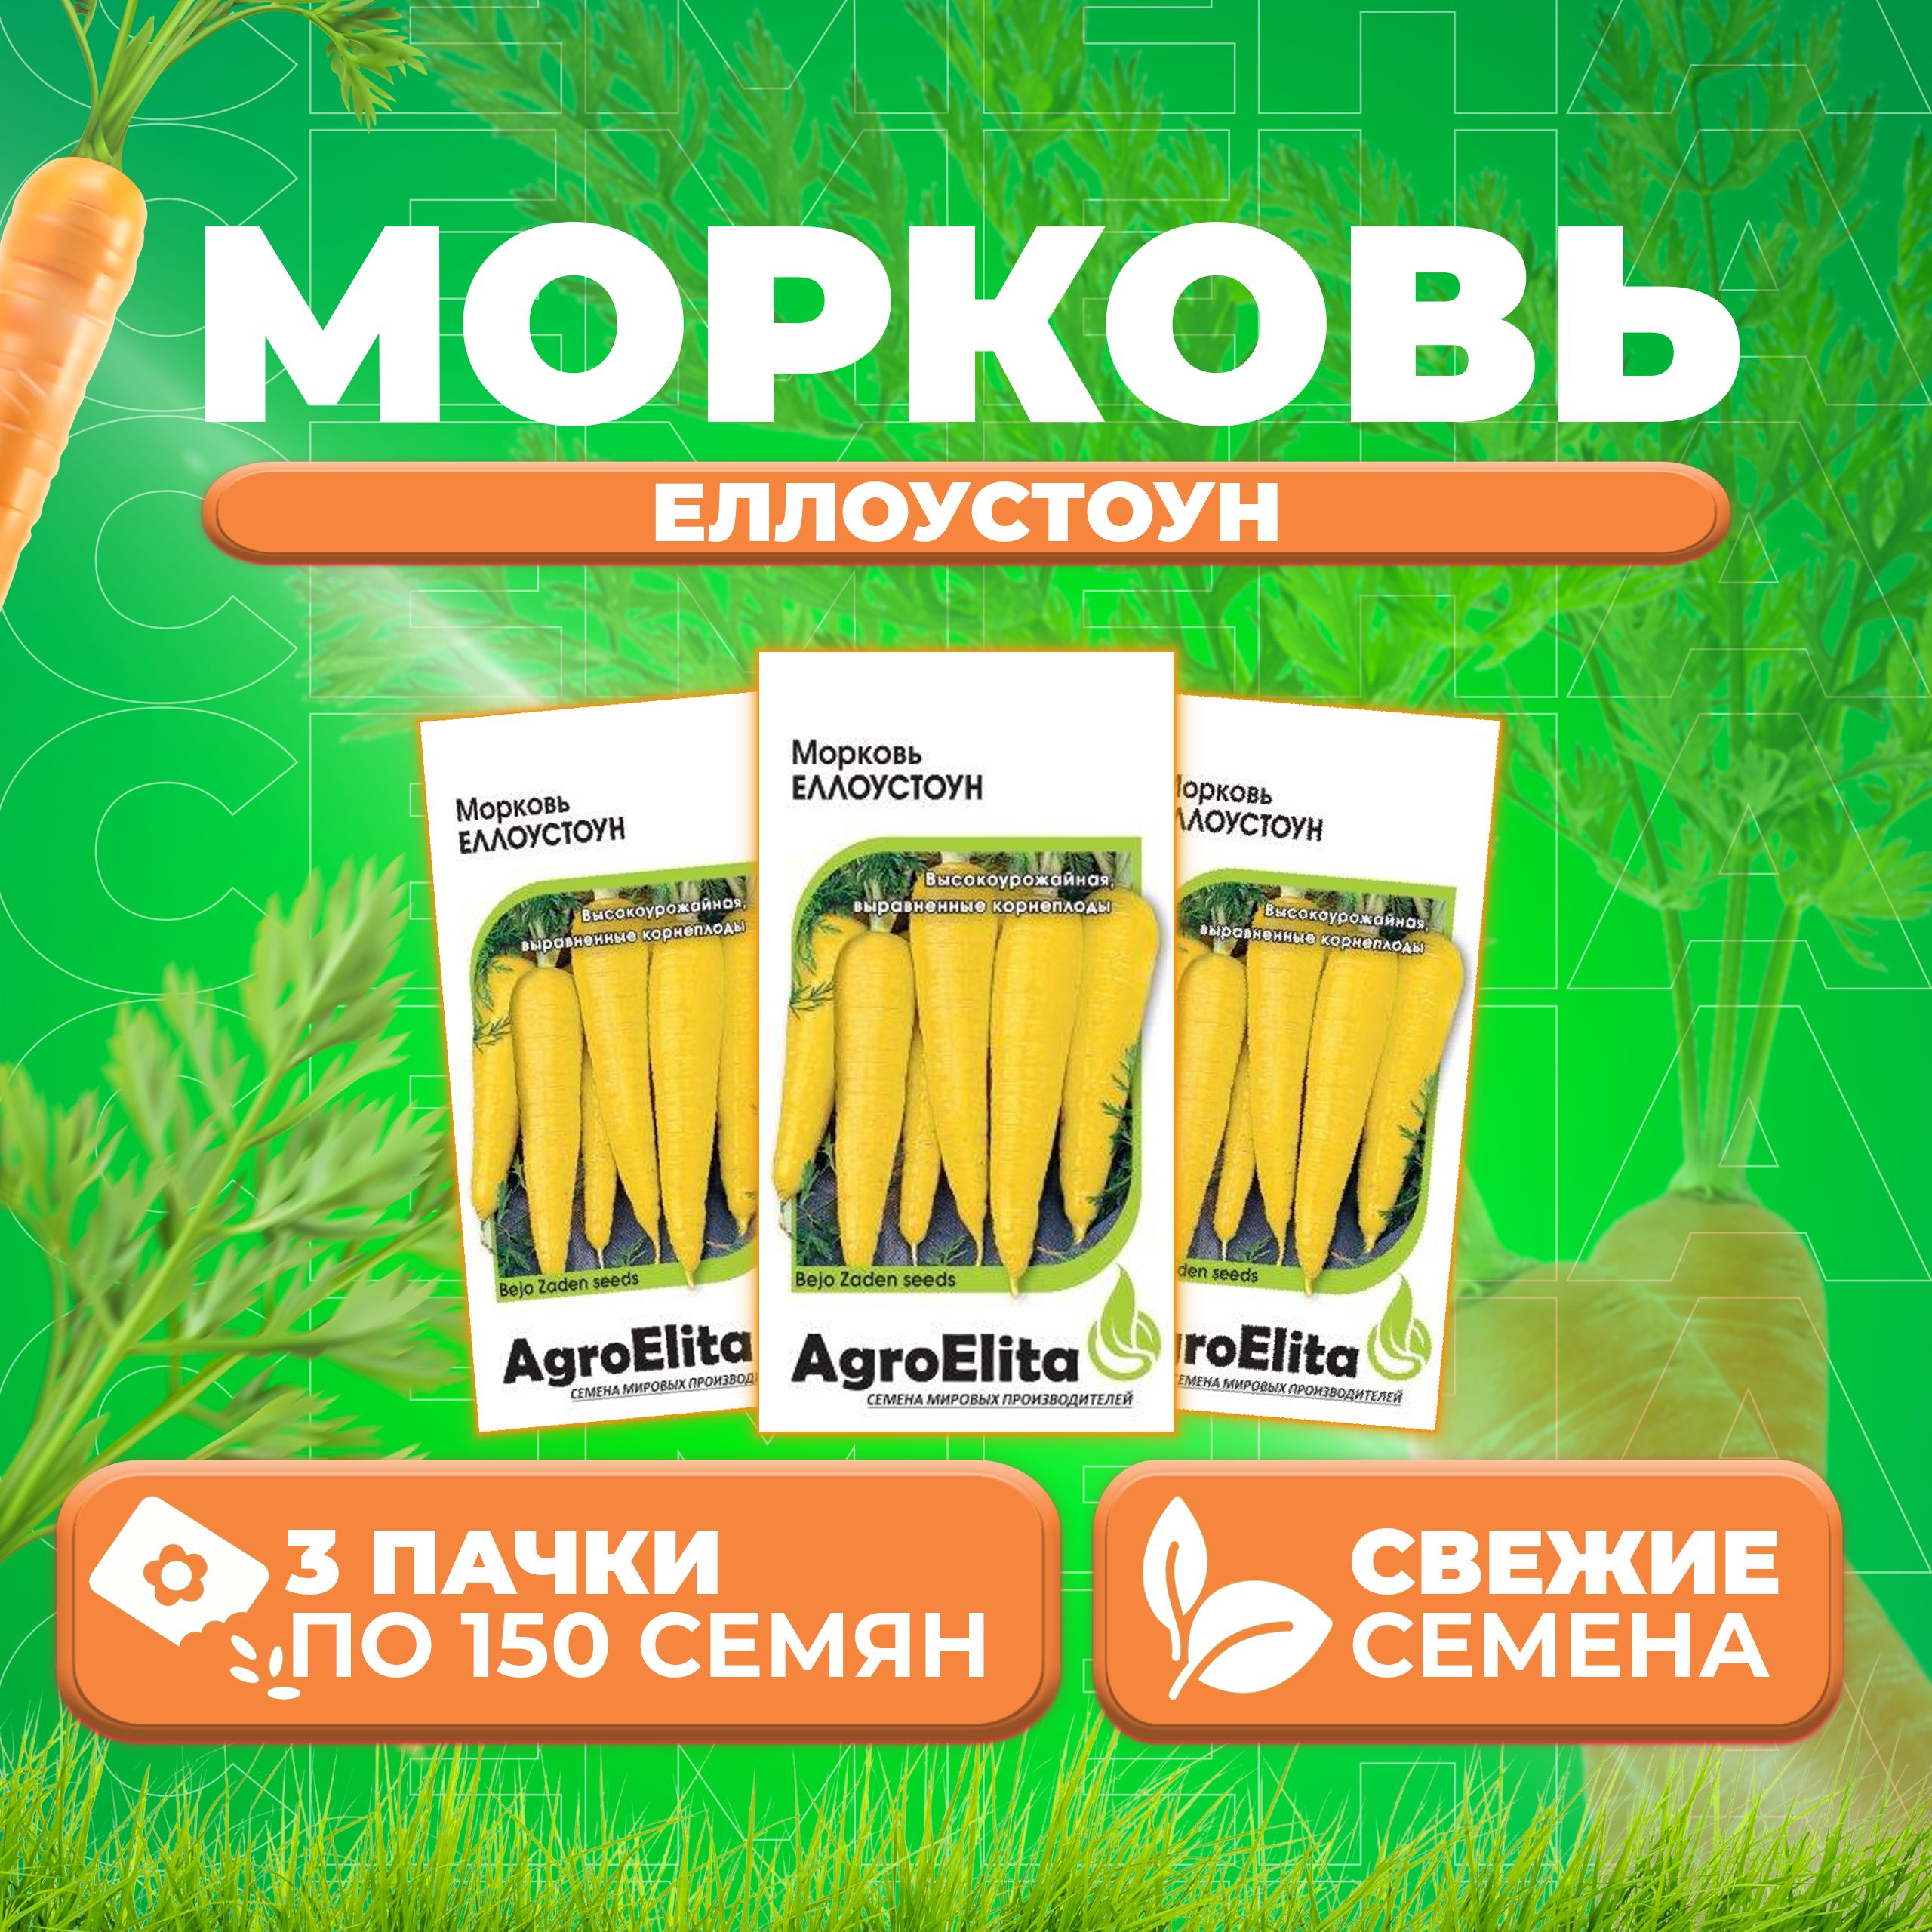 Семена Морковь Еллоустоун, 150шт, AgroElita, Bejo (3 уп)